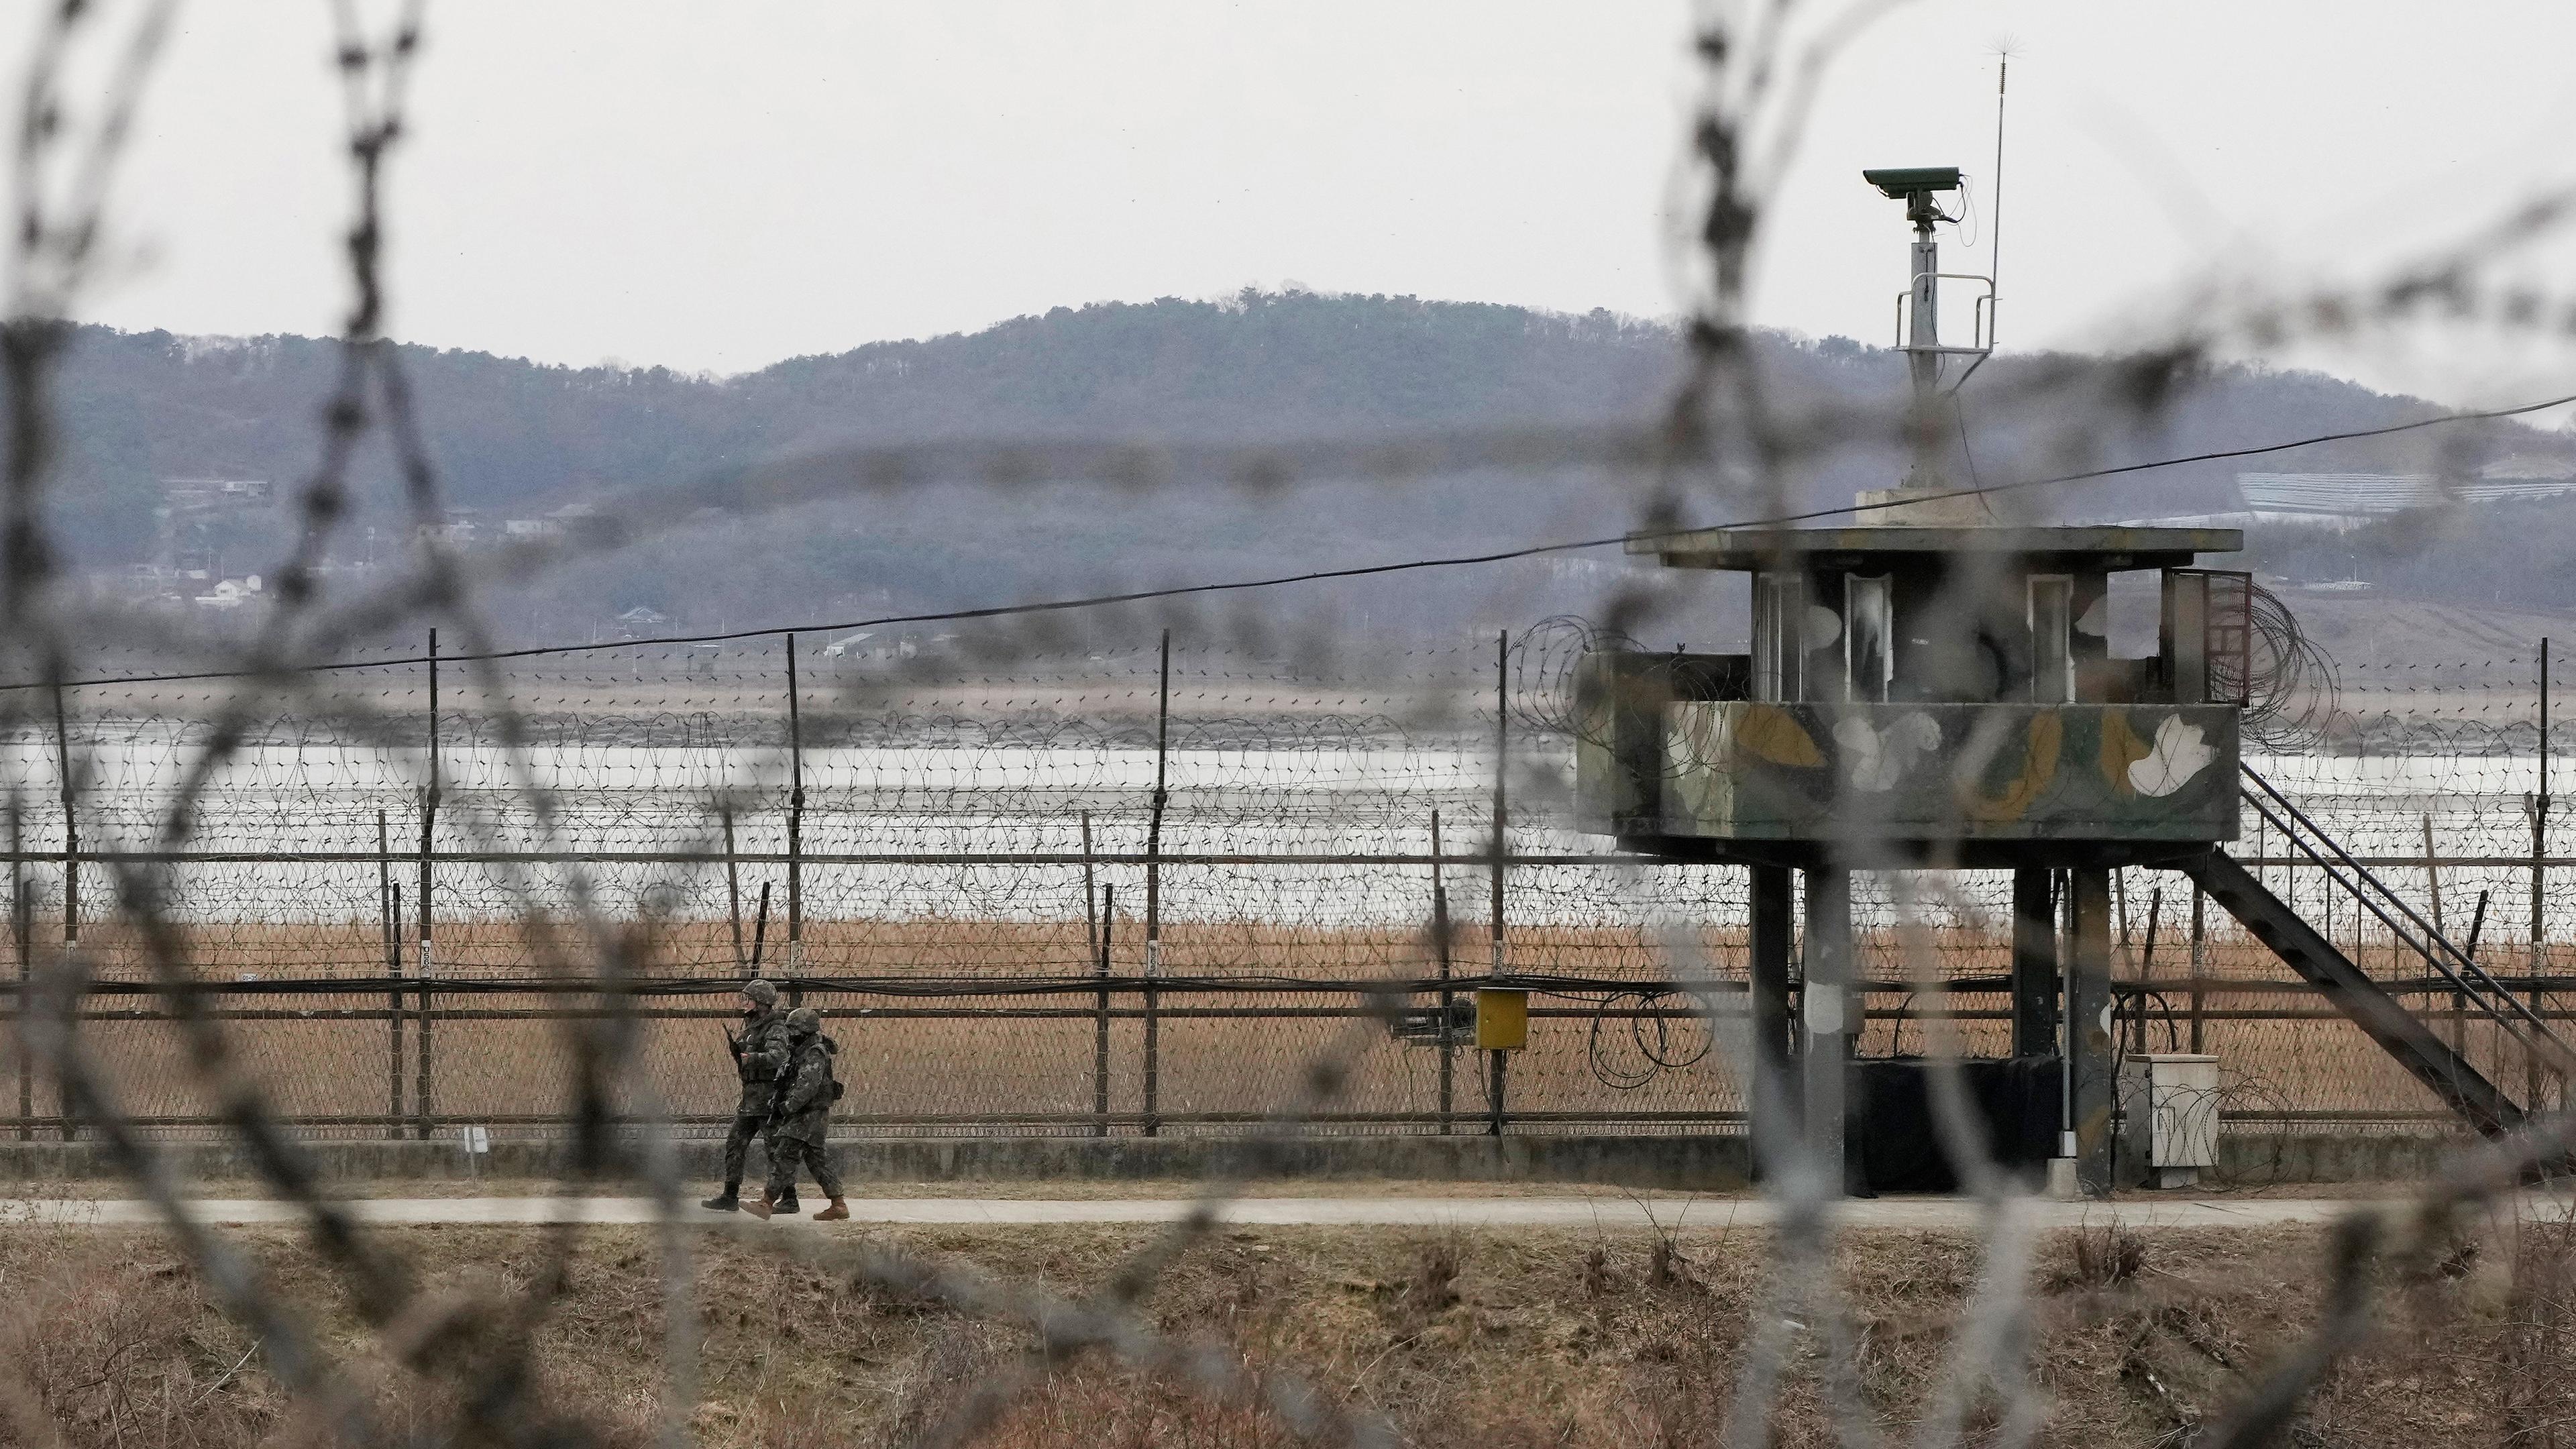 Soldaten der südkoreanischen Armee patrouillieren entlang des Stacheldrahtzauns in Paju, Südkorea, aufgenommen am 13.03.2023